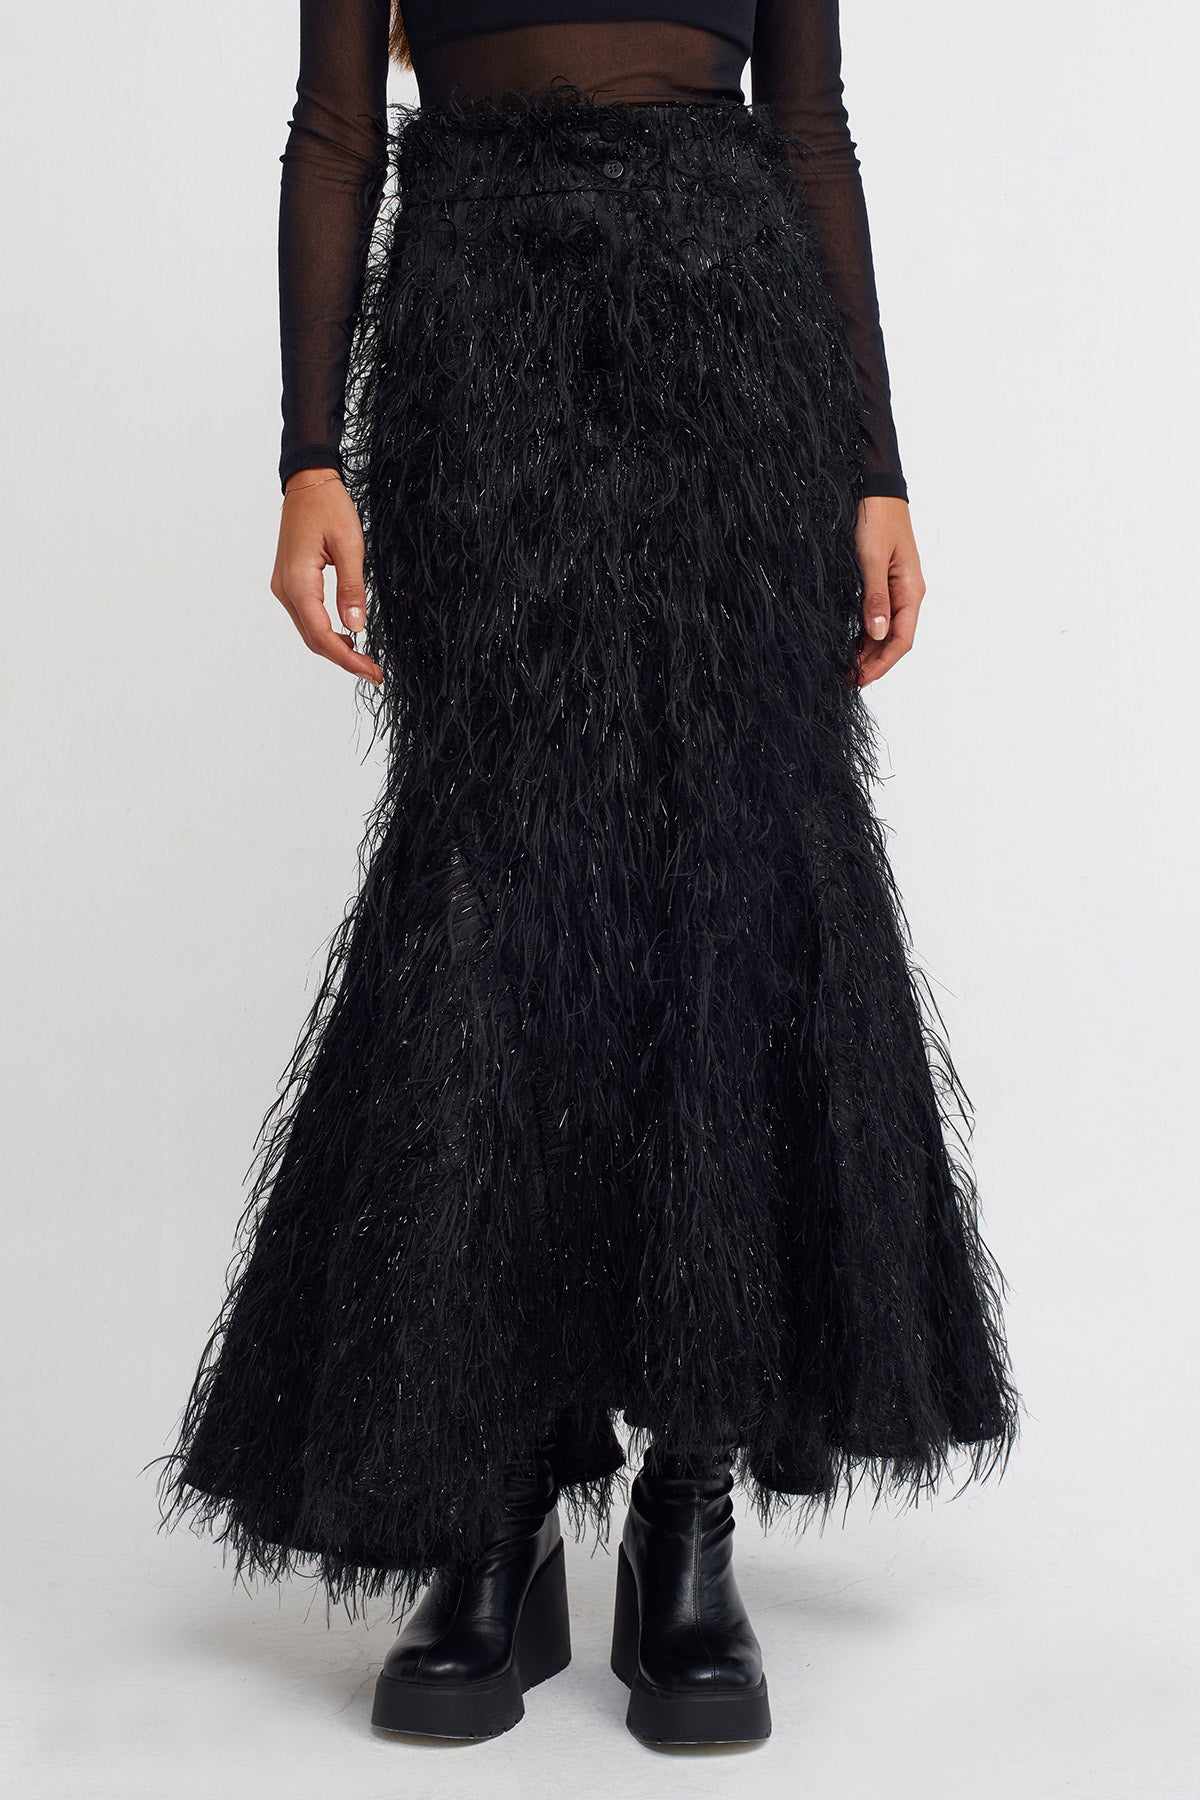 Black Fluffy Mermaid Skirt-K232012028